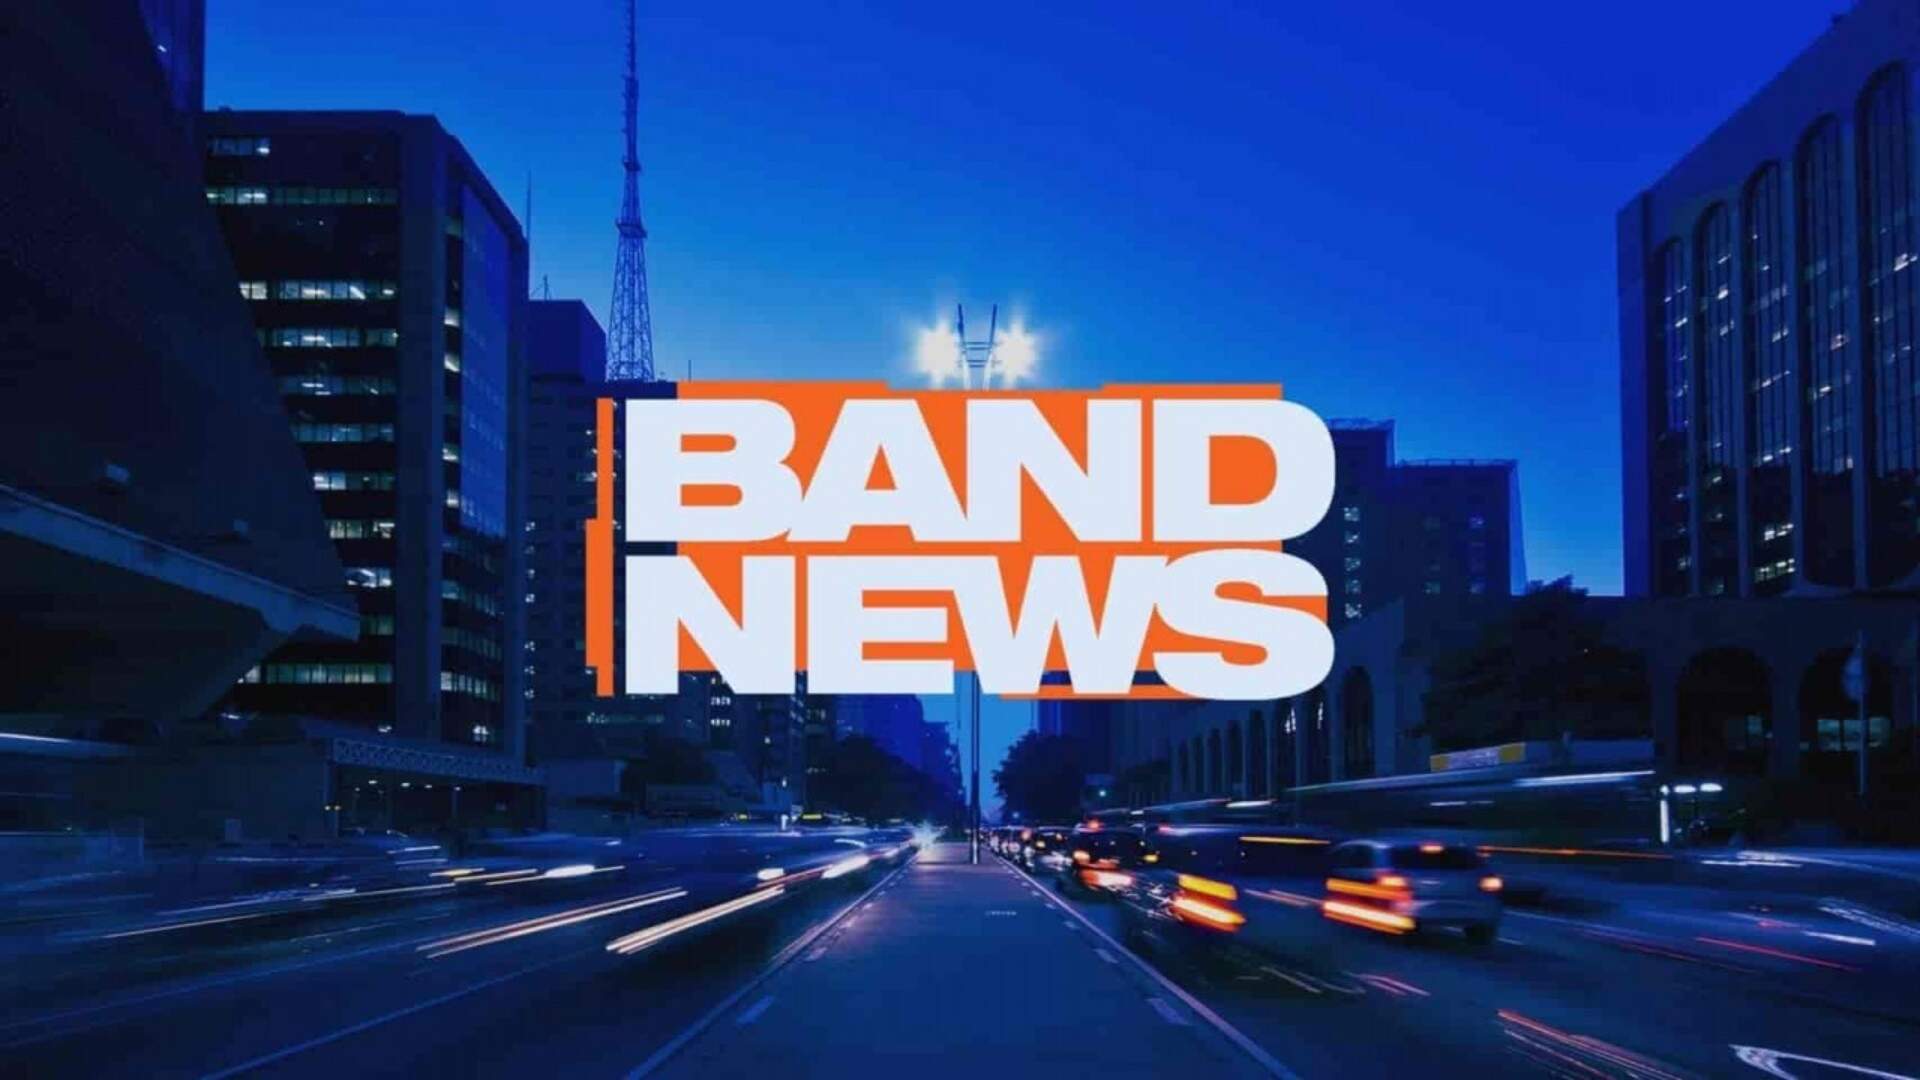 Escândalo: Band News enfrenta problemas nos bastidores e denúncia de funcionários chega na direção - Metropolitana FM